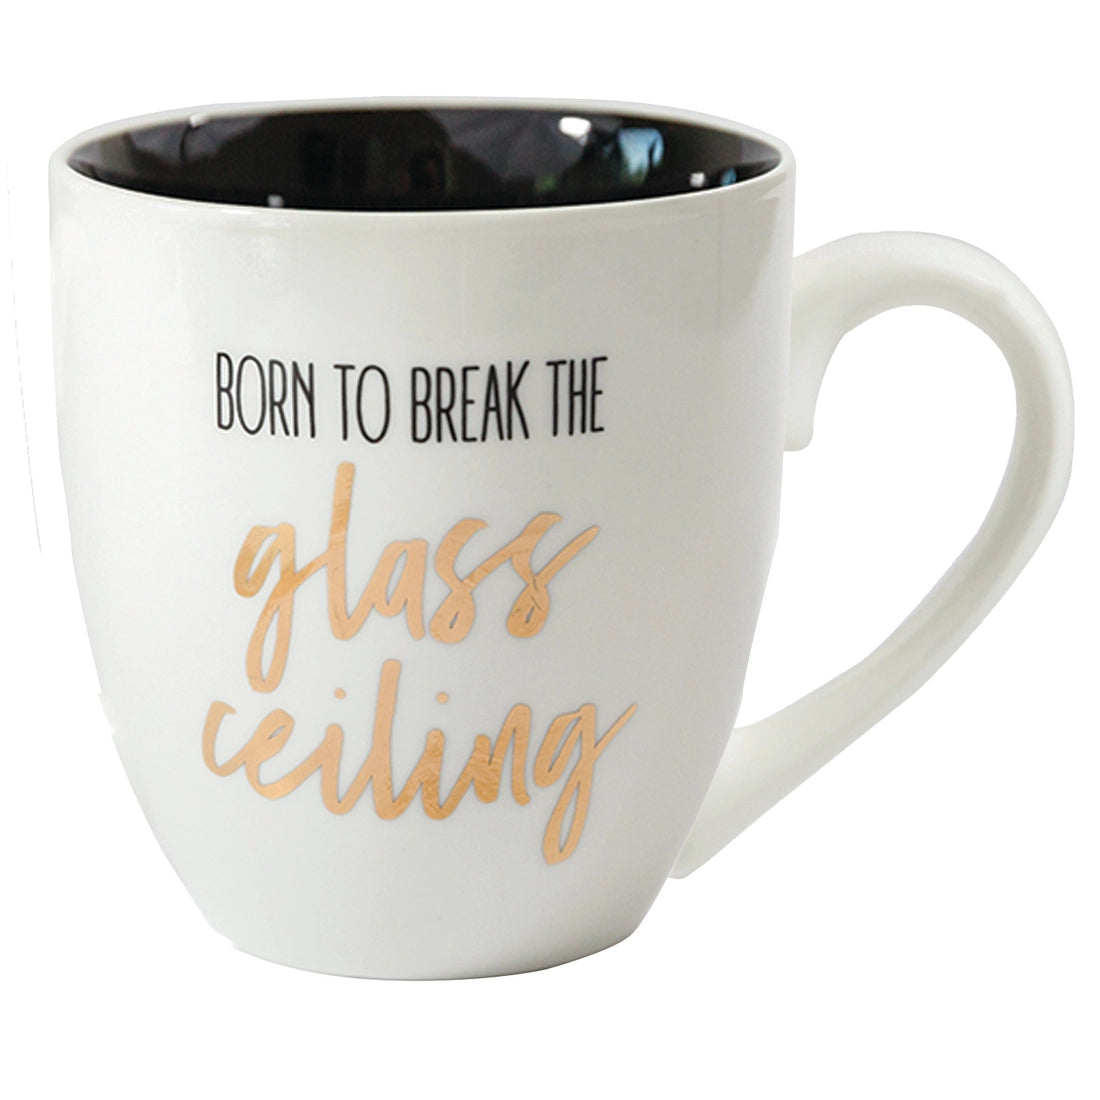 Glass Ceiling Ceramic Mug